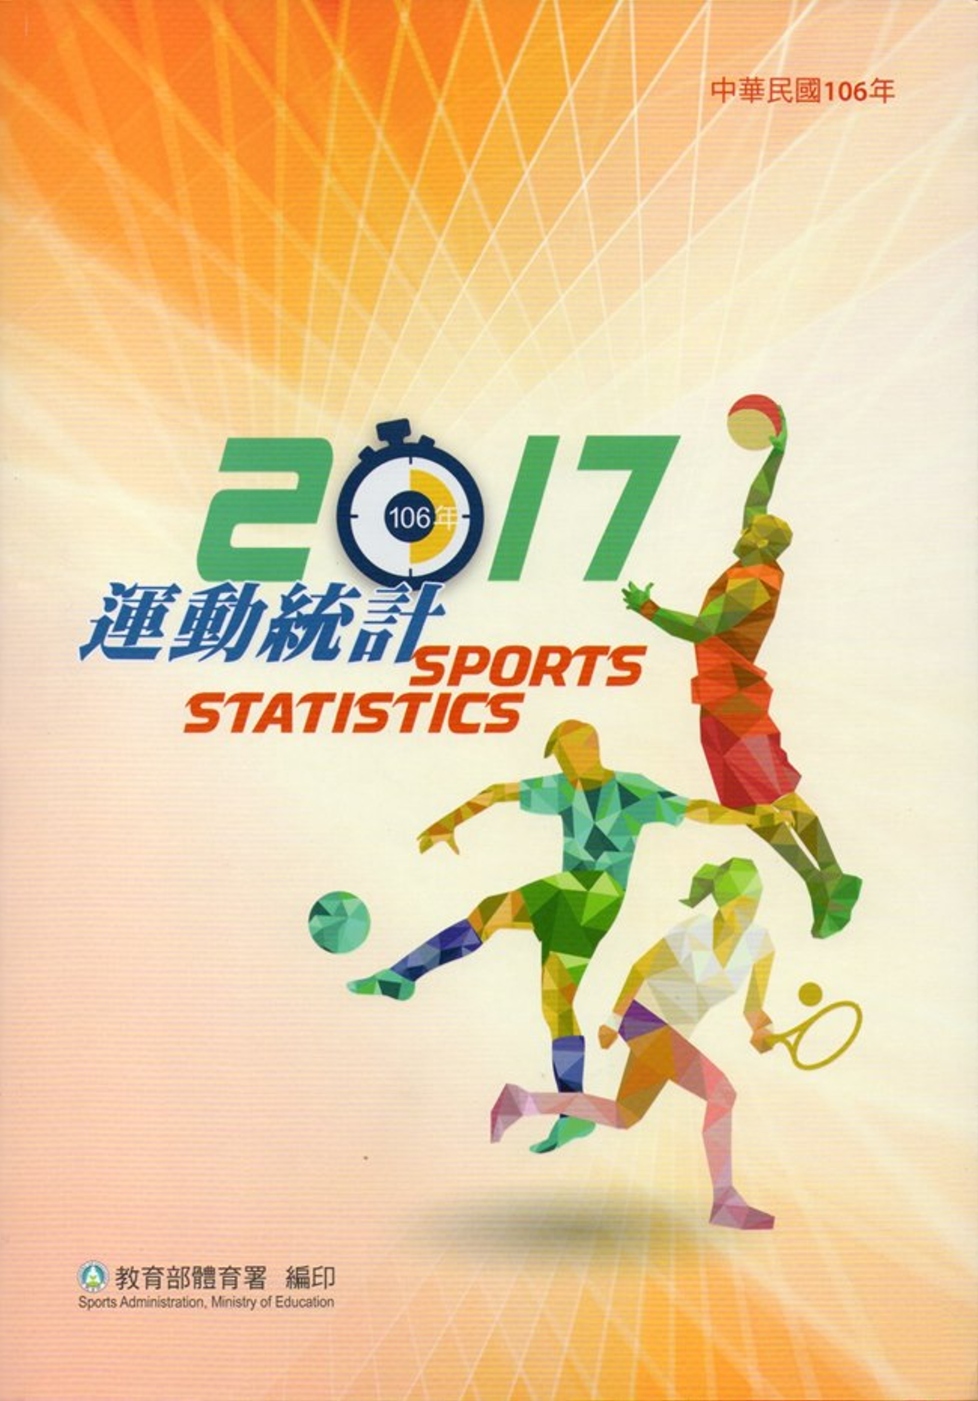 中華民國106年運動統計(附光碟)